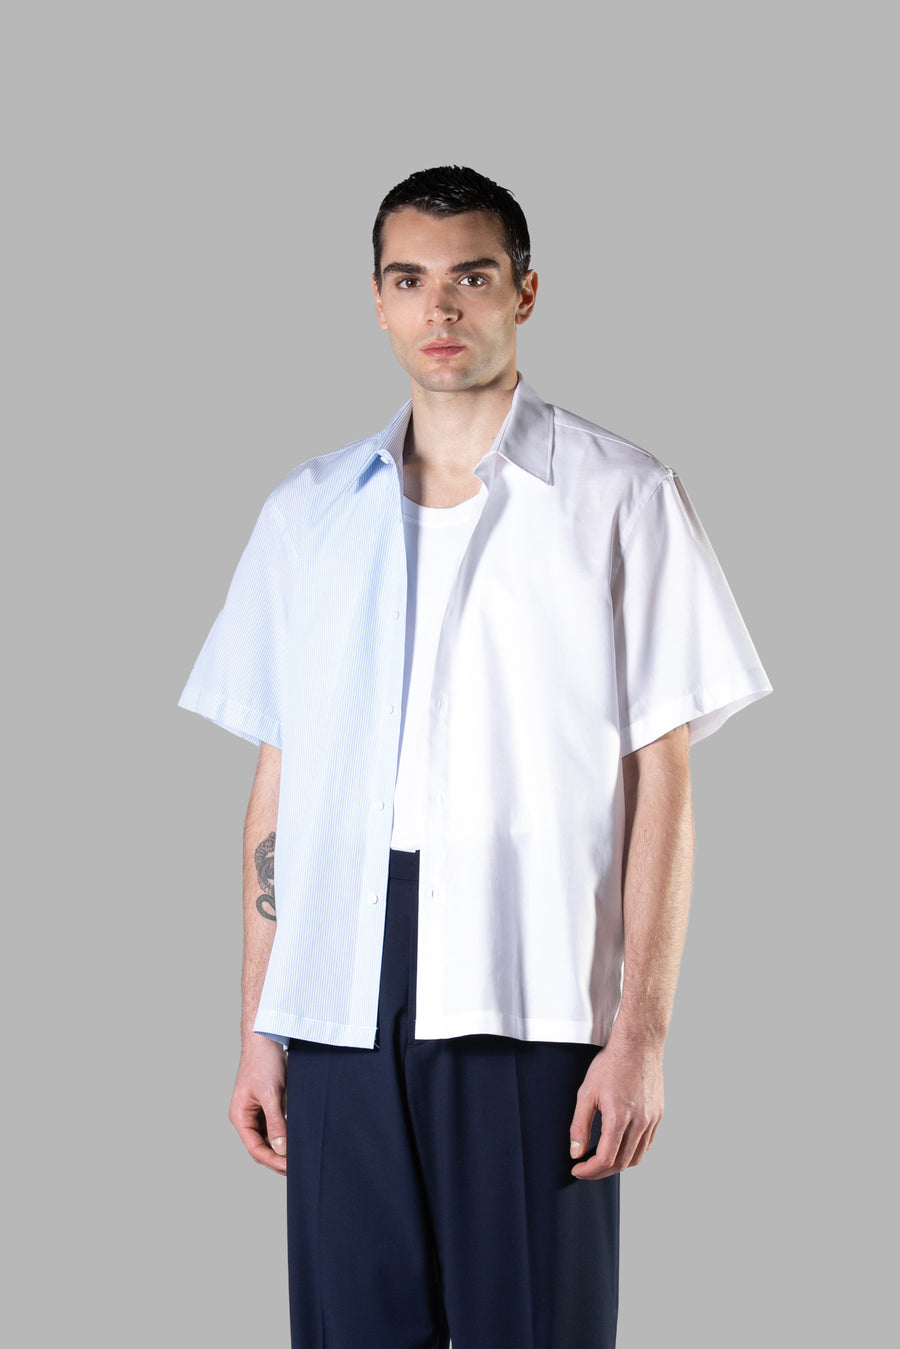 Camicia oversize in cotone a righe